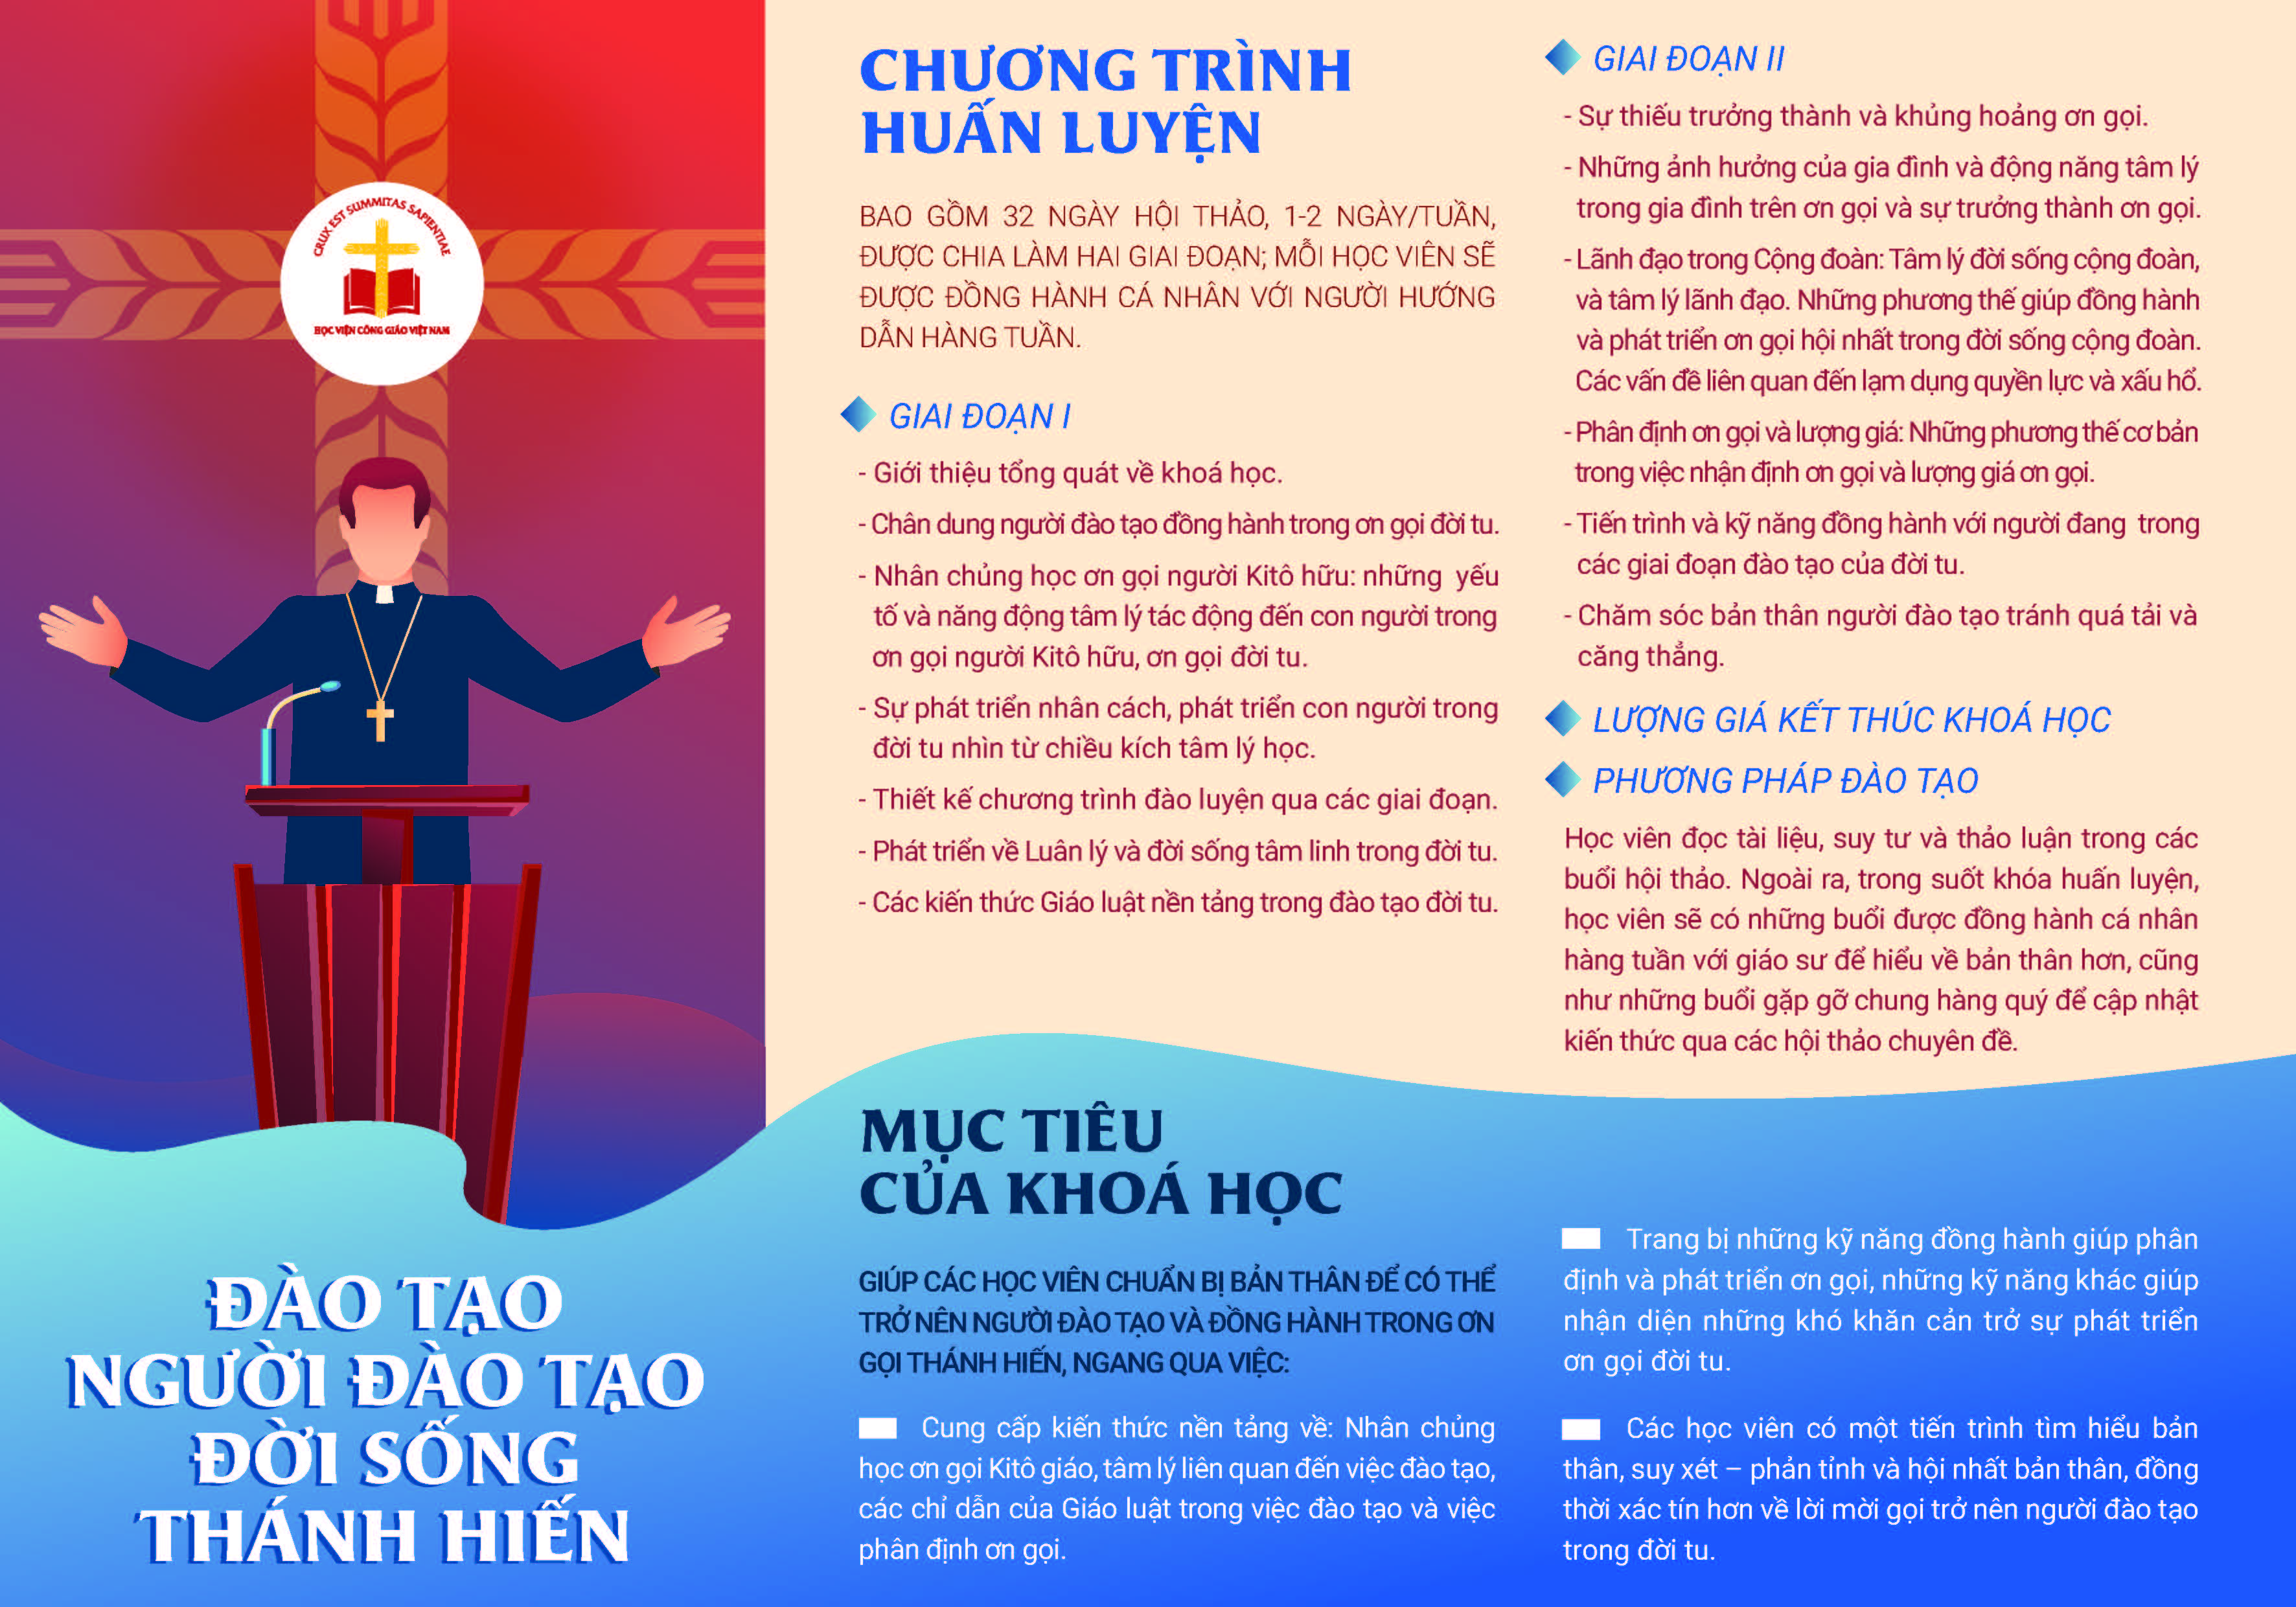 Học viện Công giáo Việt Nam: Thông báo mở lại các lớp Mục vụ, Đào tạo, Ngoại ngữ